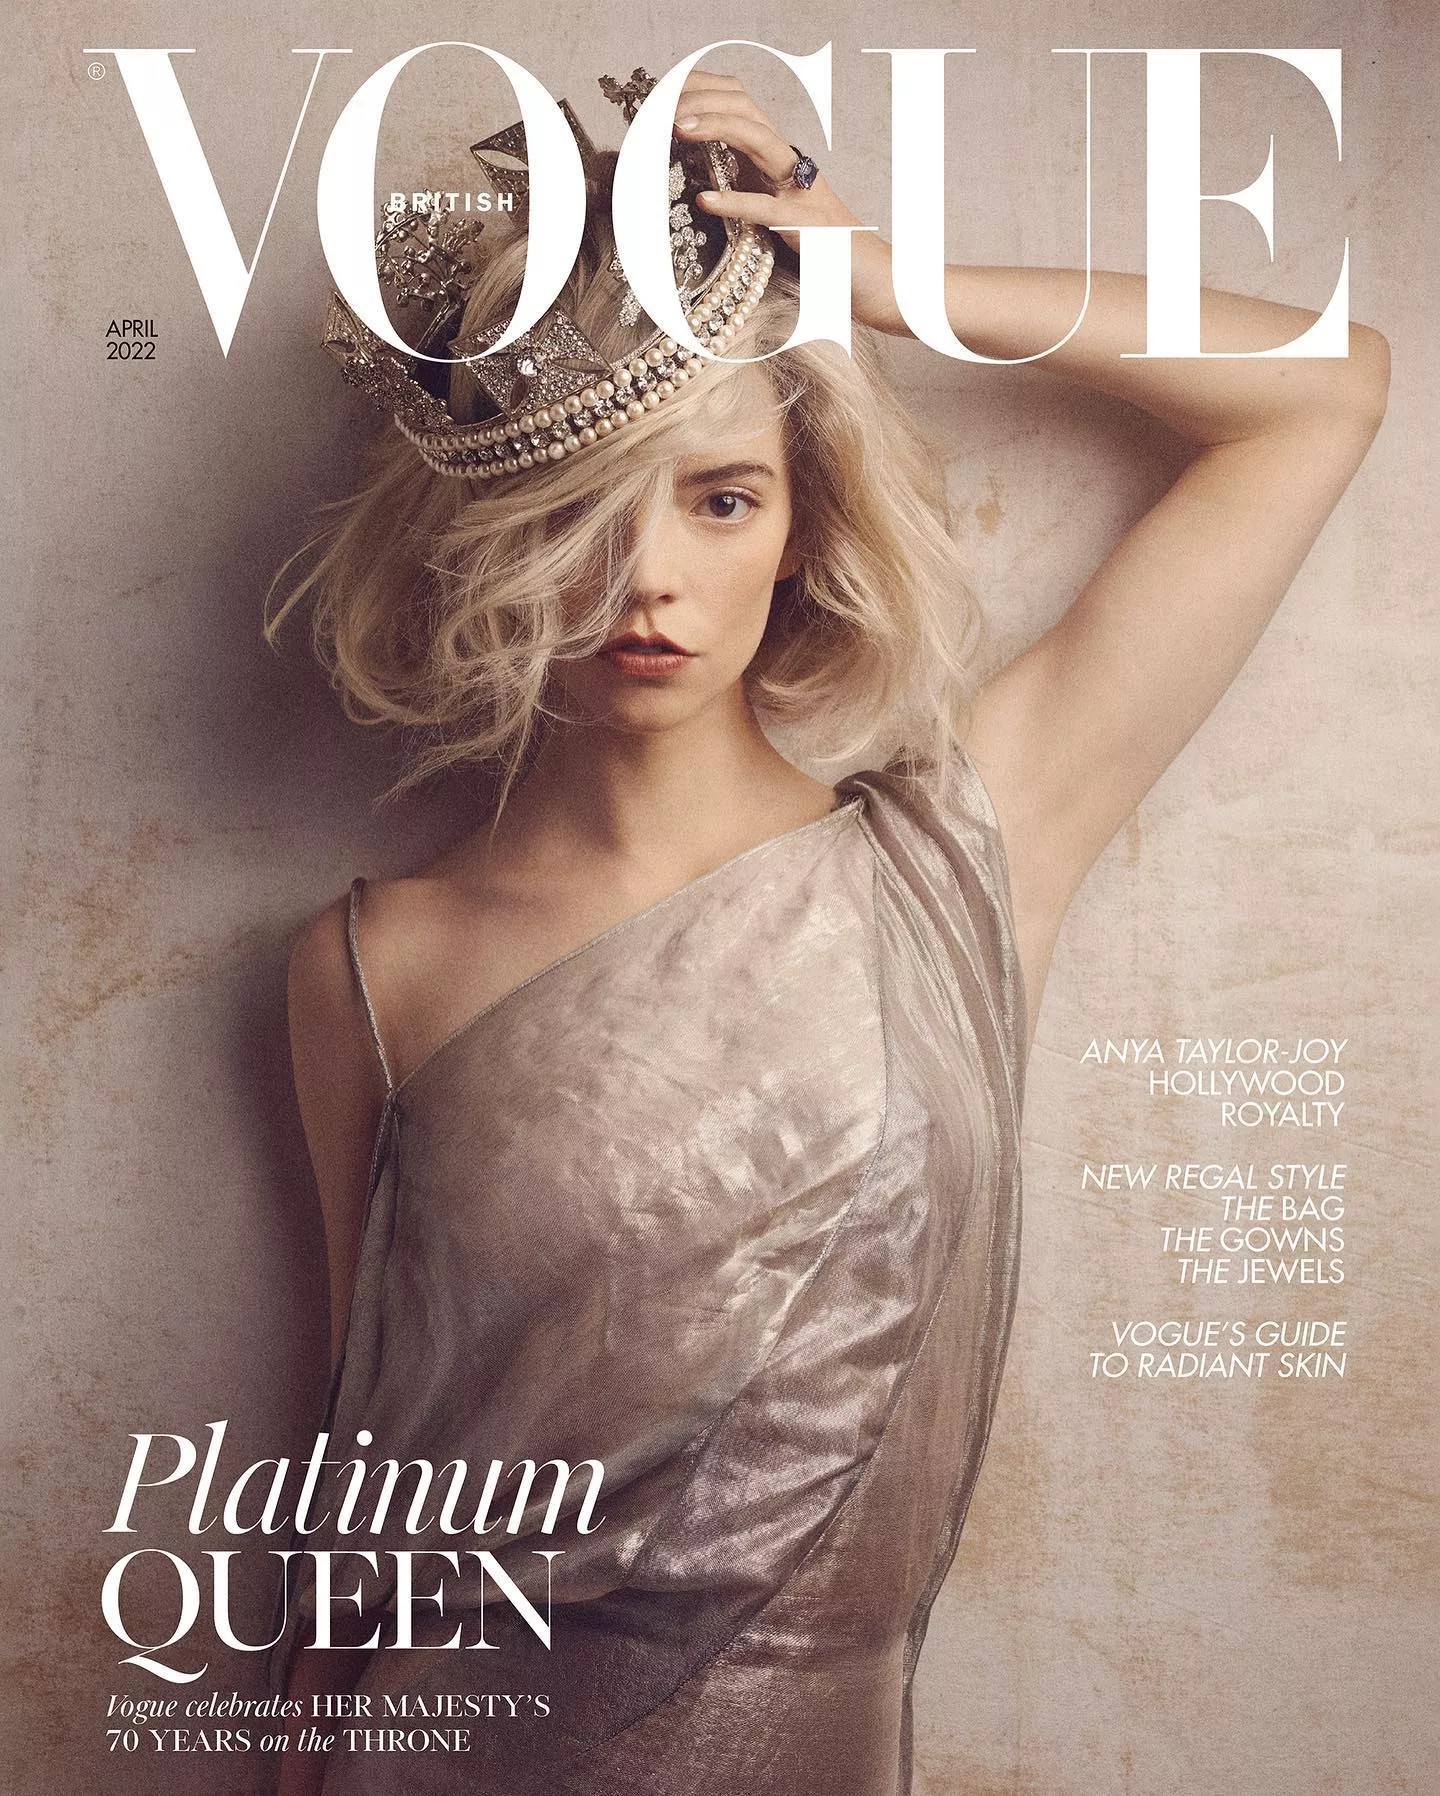 Аня Тейлор-Джой для апрельского номера британского Vogue